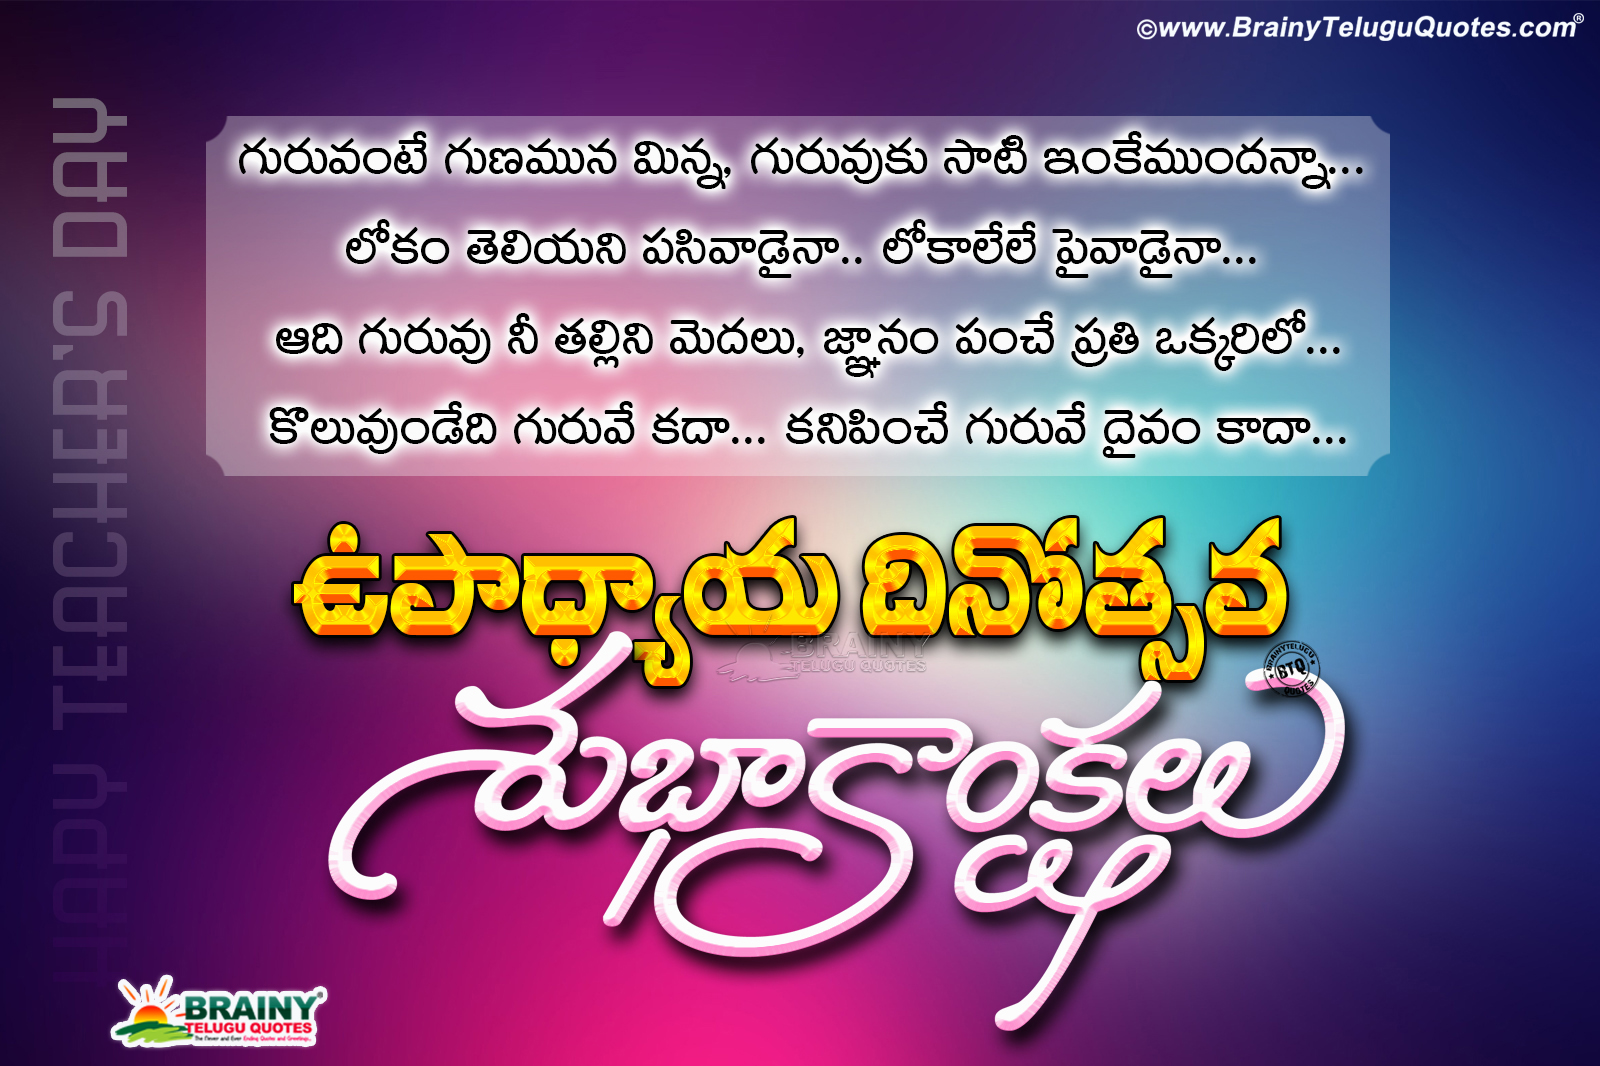 Online Teachers Day Greetings In Telugu, Telugu Best - HD Wallpaper 